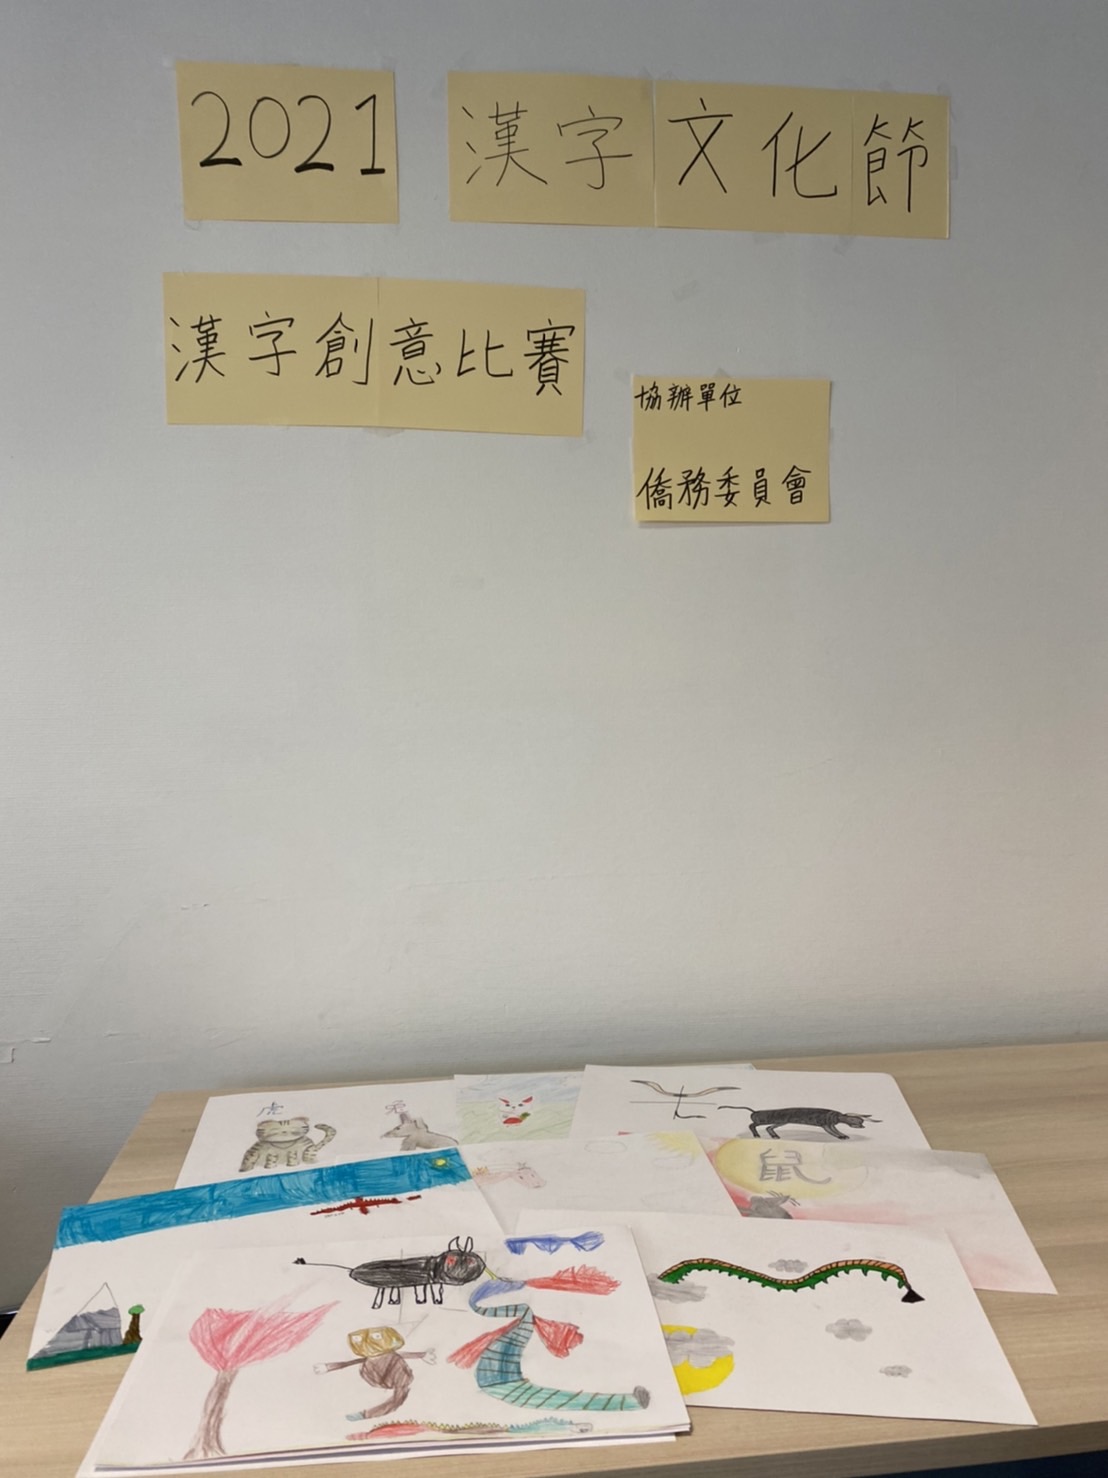 法國亭林中文學校12月11日舉辦「110年海外正體漢字文化節-大巴黎地區中文學校漢字創意繪畫比賽」。